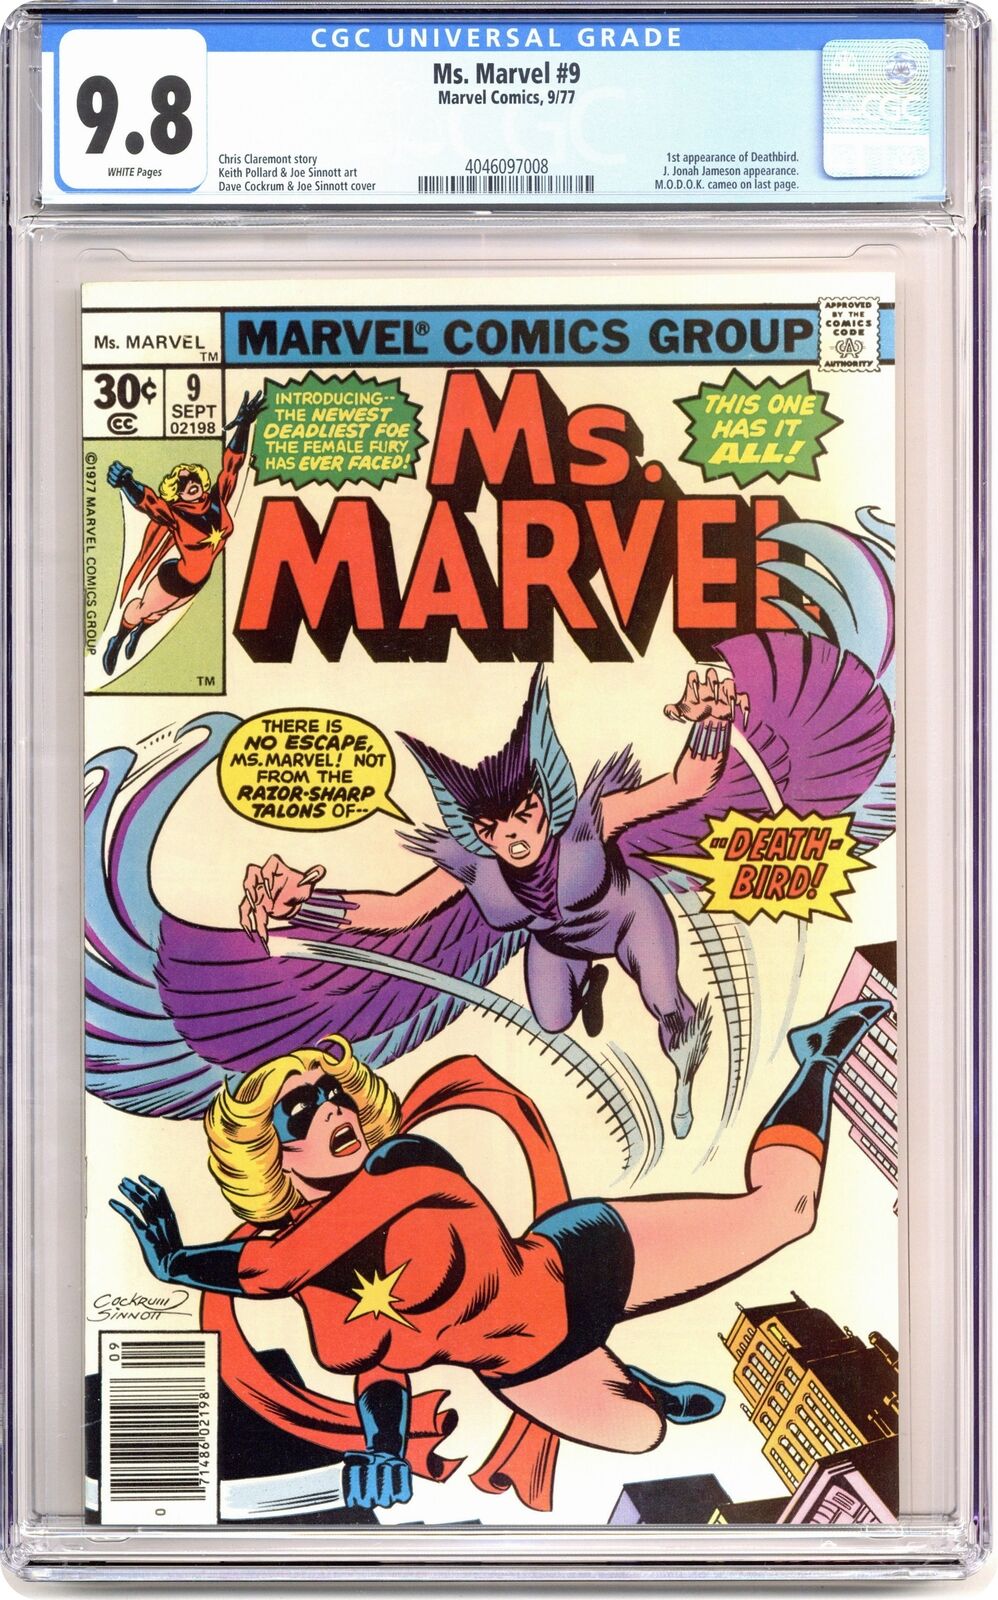 Ms. Marvel #9 CGC 9.8 1977 4046097008